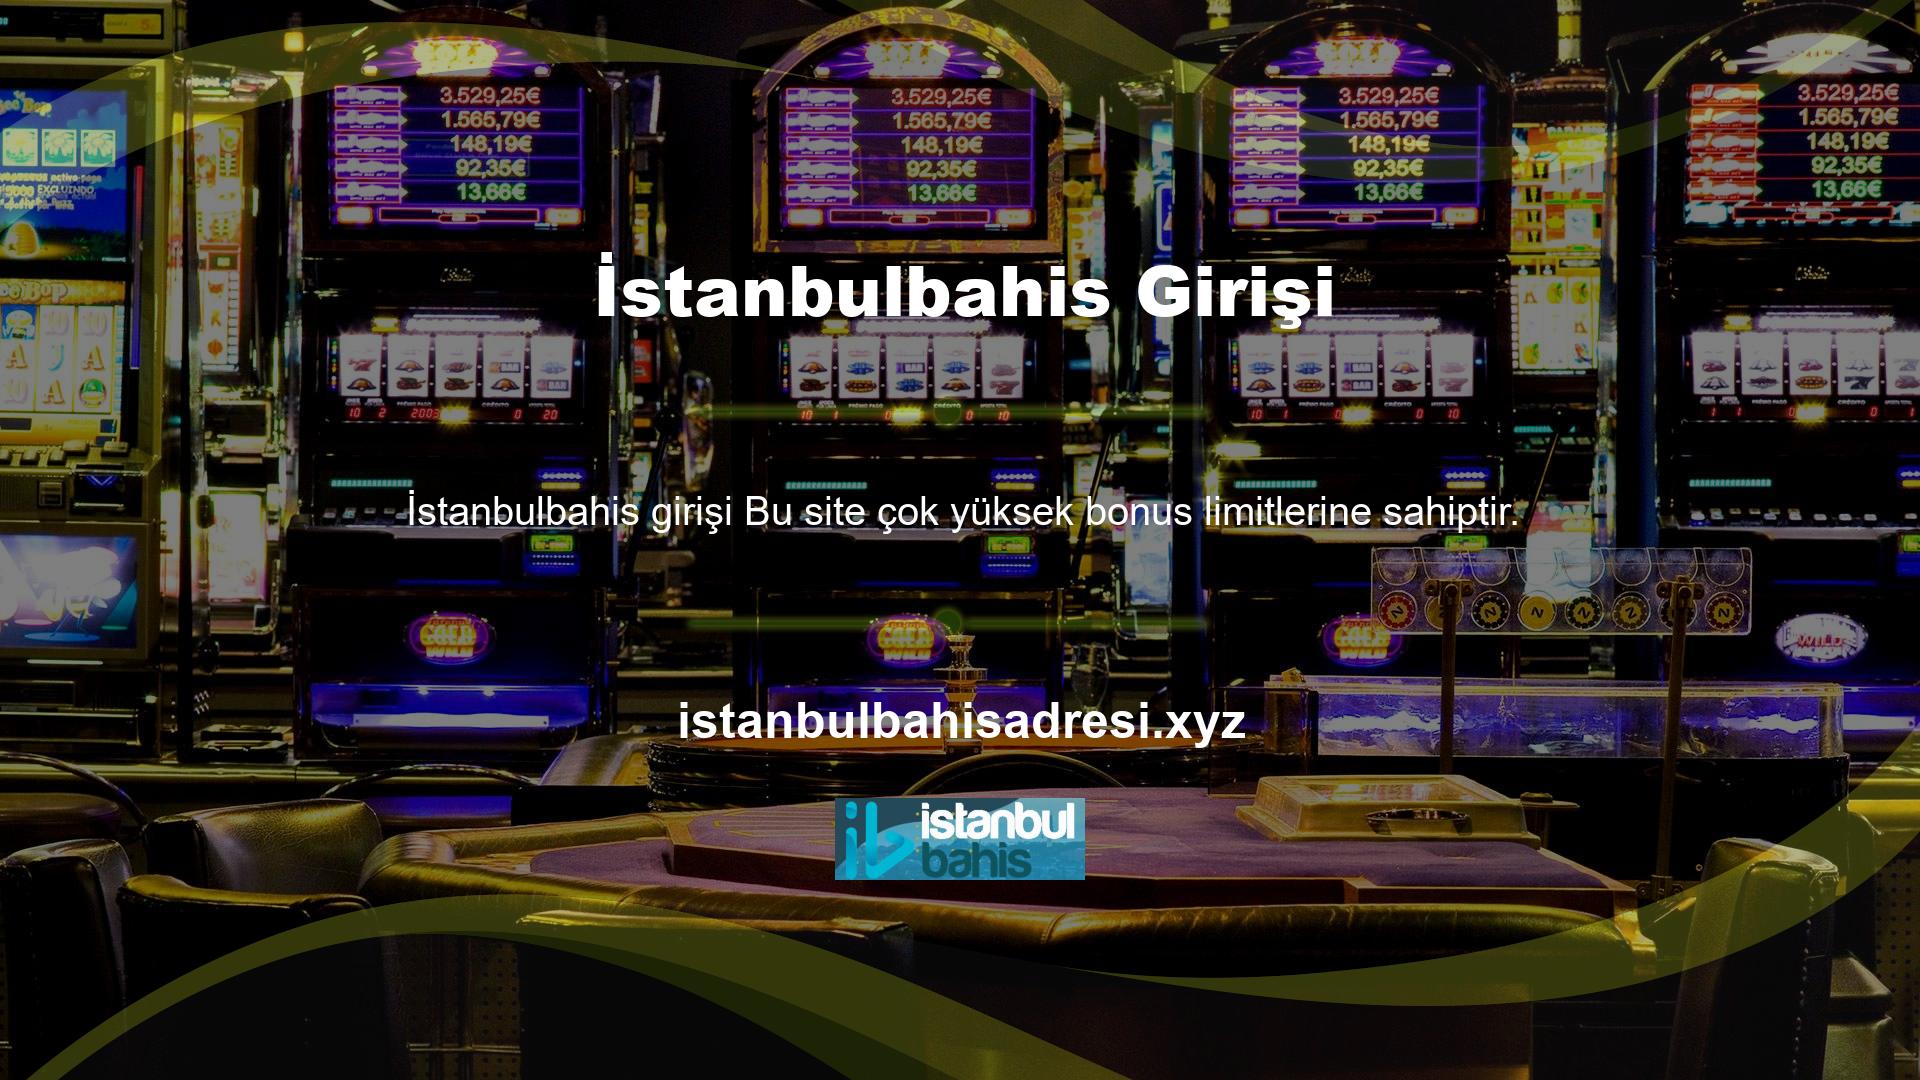 İstanbulbahis kayıt olarak canlı bahis mağazamızda hesap açabilir ve tüm avantajlardan yararlanabilirsiniz